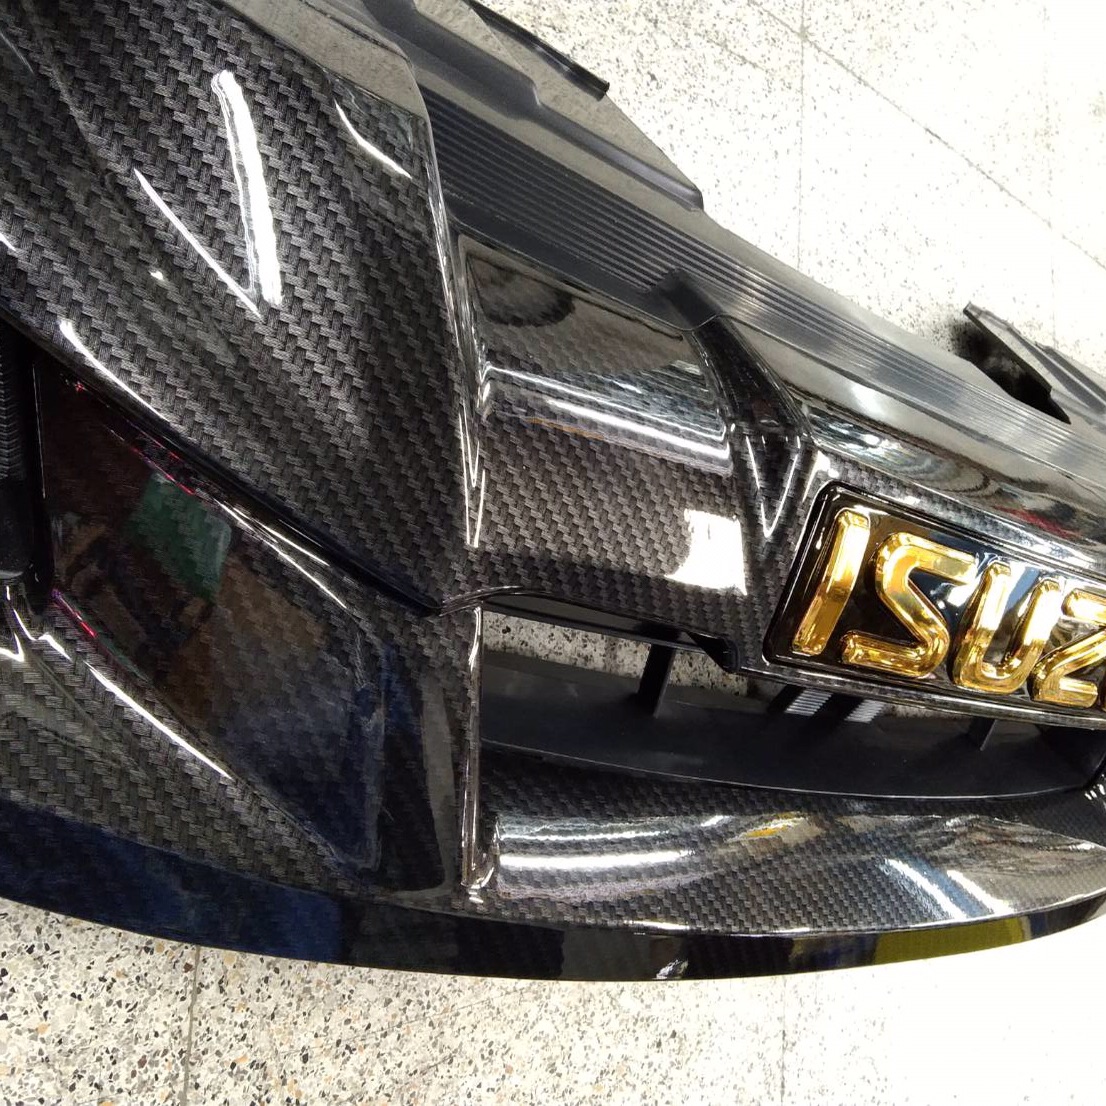 กระจังหน้าแต่งตรงรุ่นรถ ออนิว อีซูซุ D-MAX 2012 โลโก้สีทอง งานคาร์บอน งานสั่งทำ